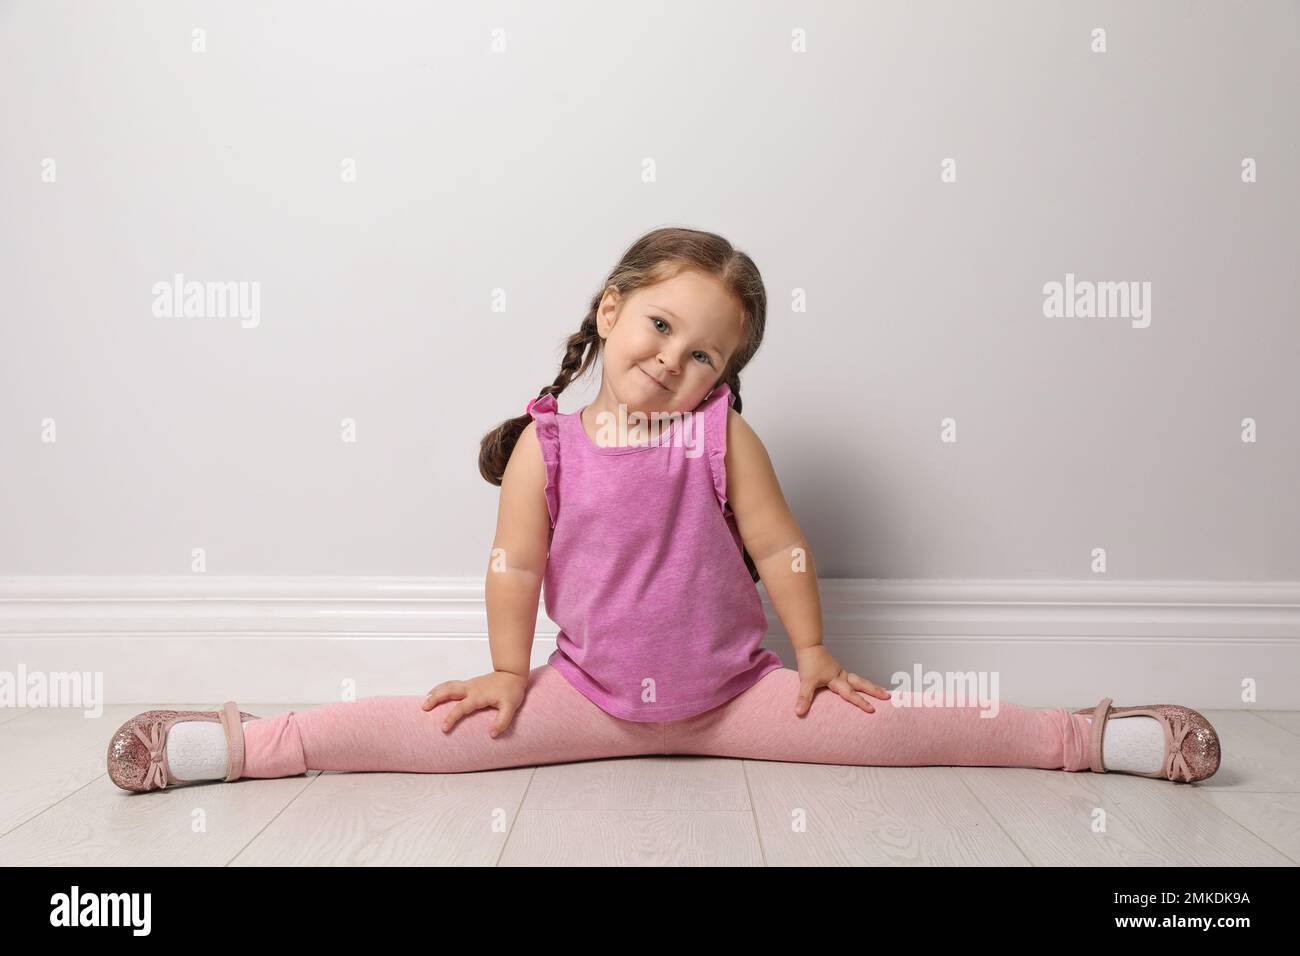 Petite fille mignonne sur le sol près du mur gris clair Banque D'Images